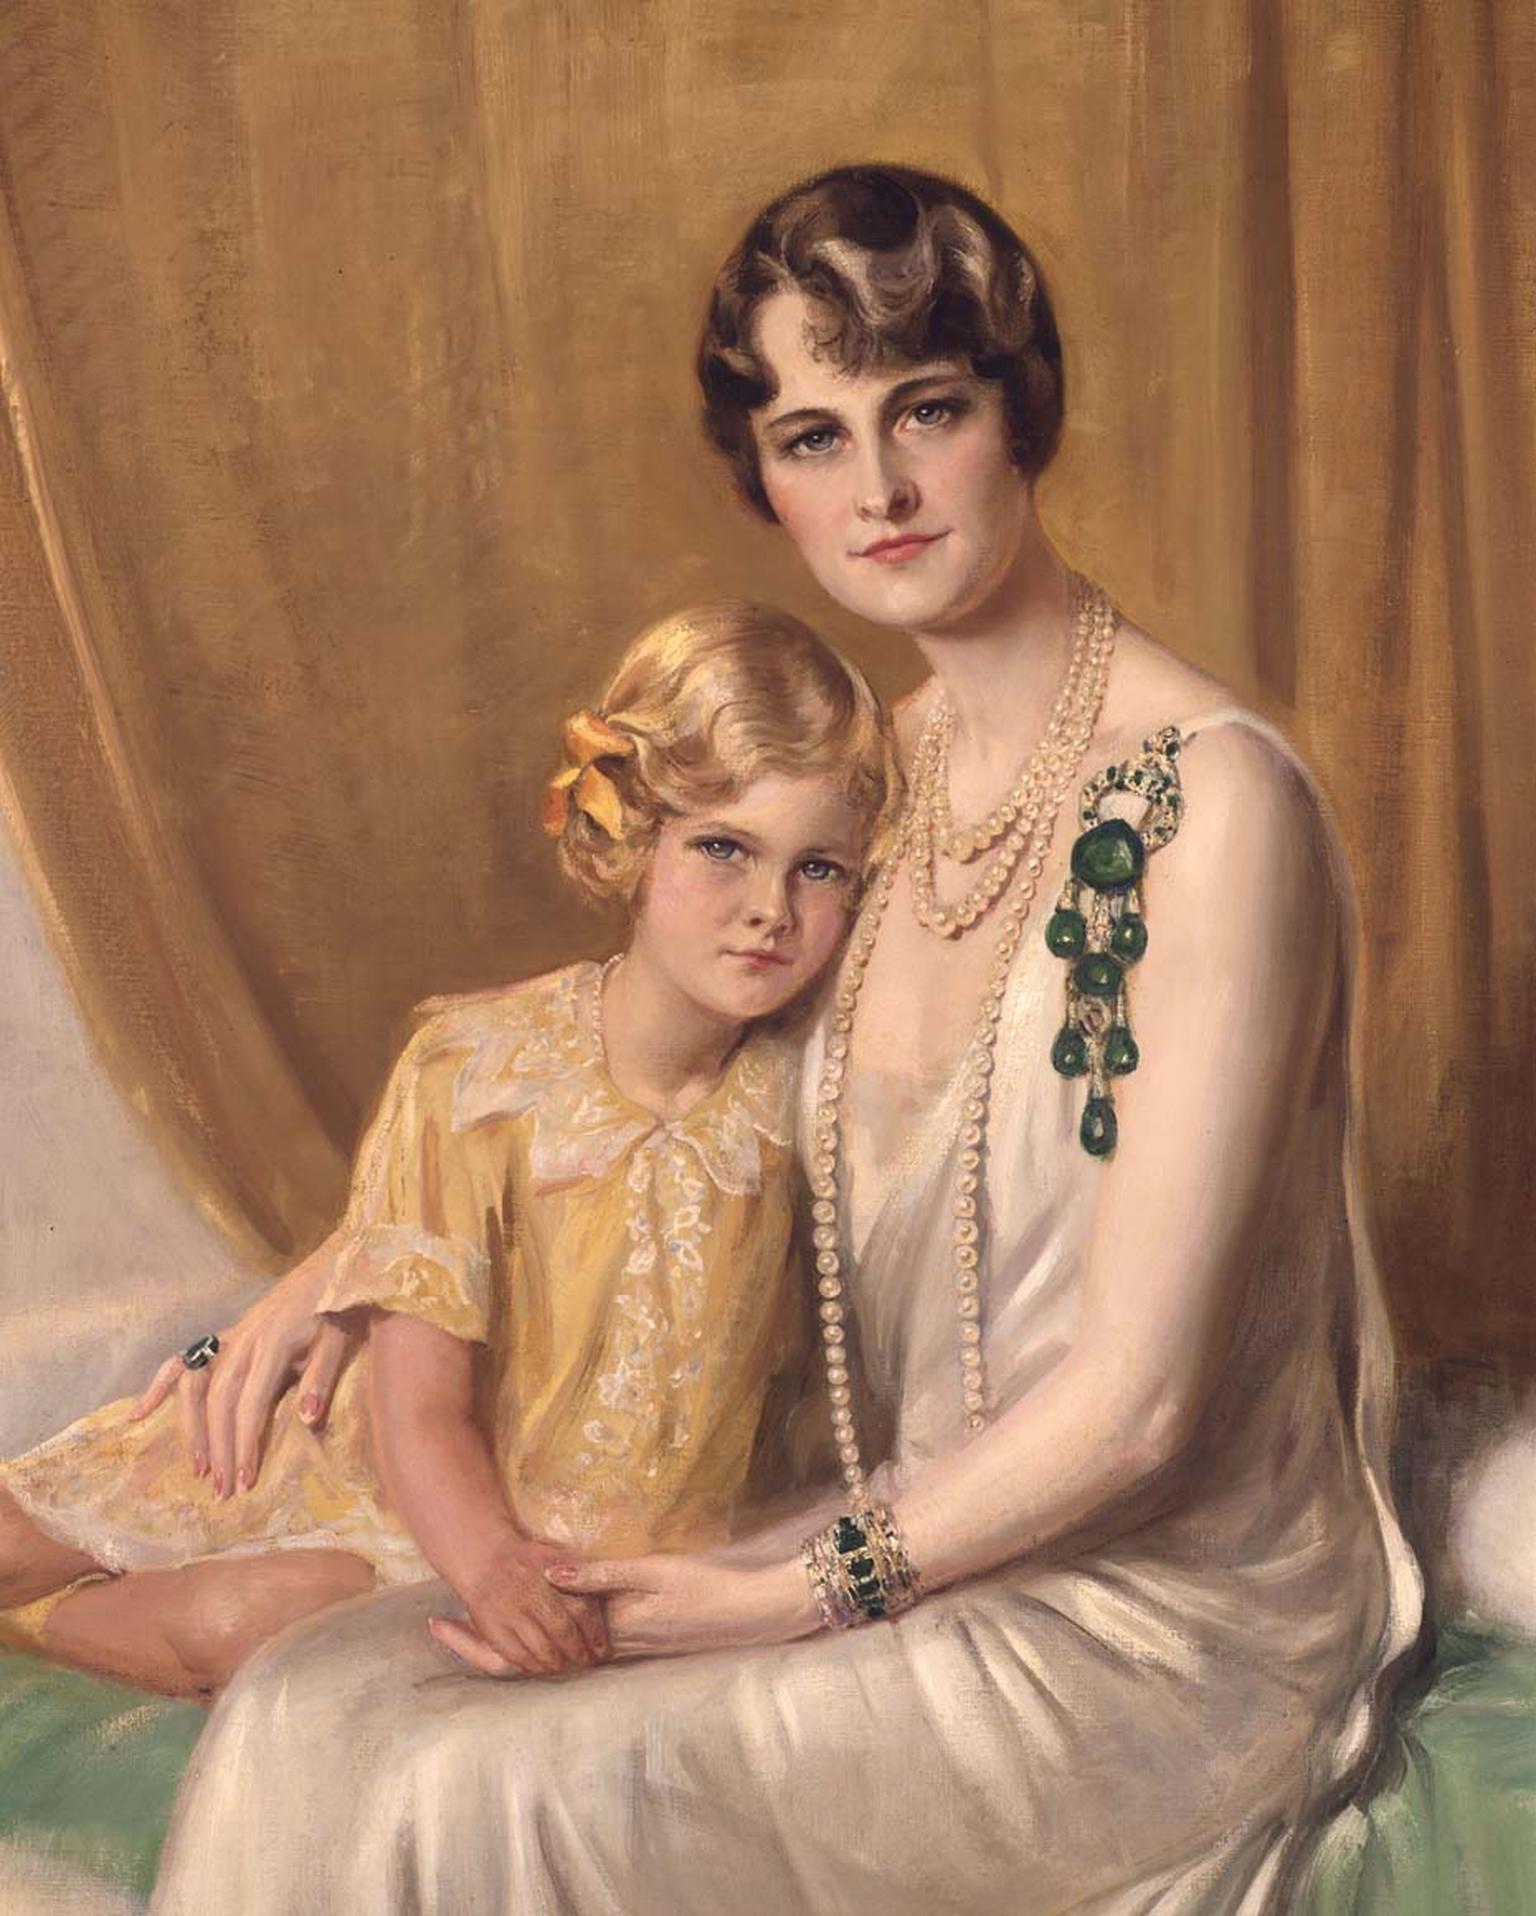 Marjorie Merriweather Post sat alongside her daughter